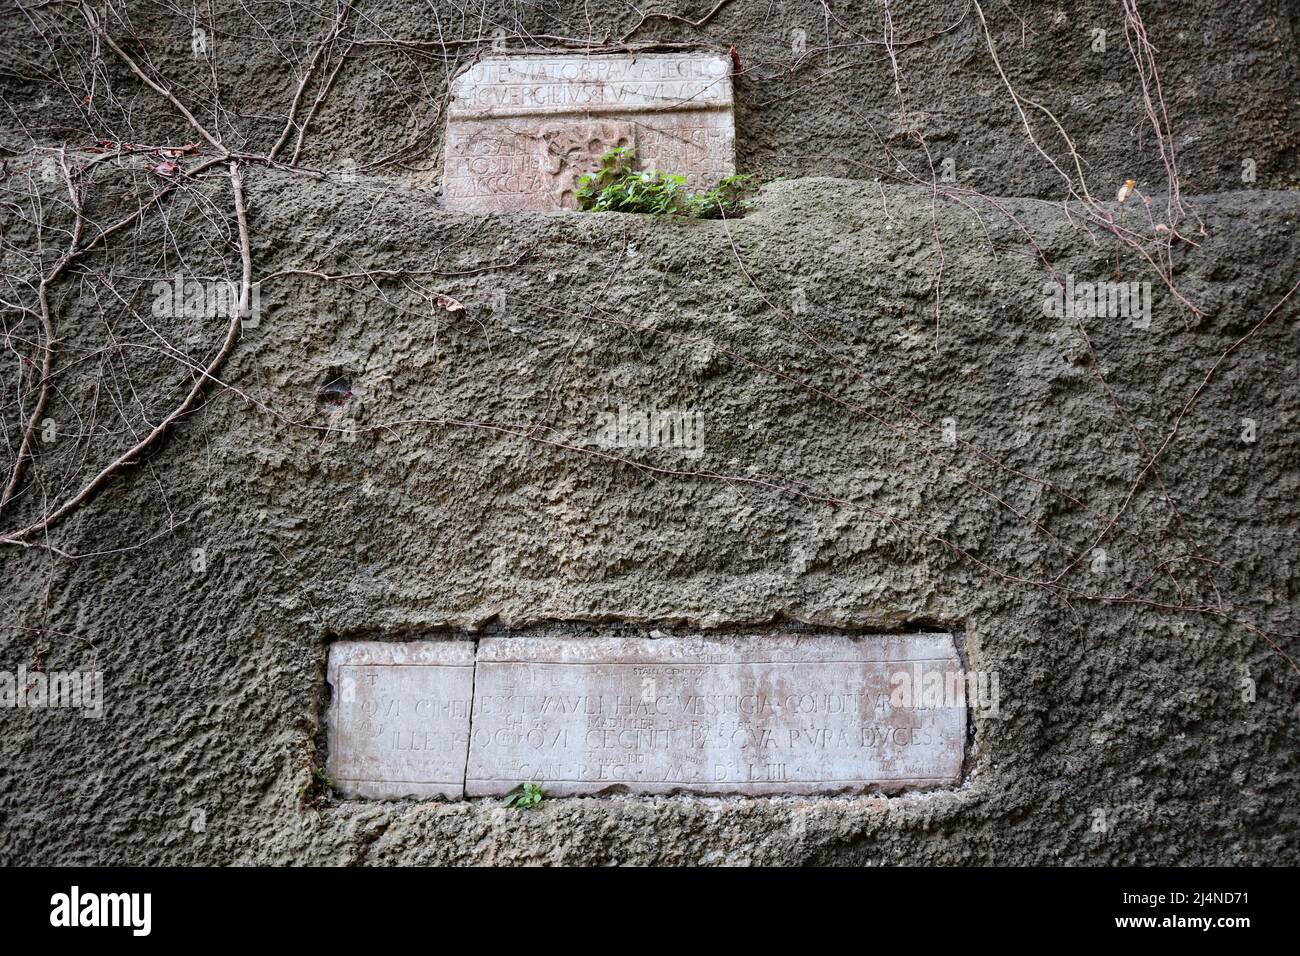 Napoli - Epigrafe di fronte all'ingresso della Tomba di Virgilio Foto de stock